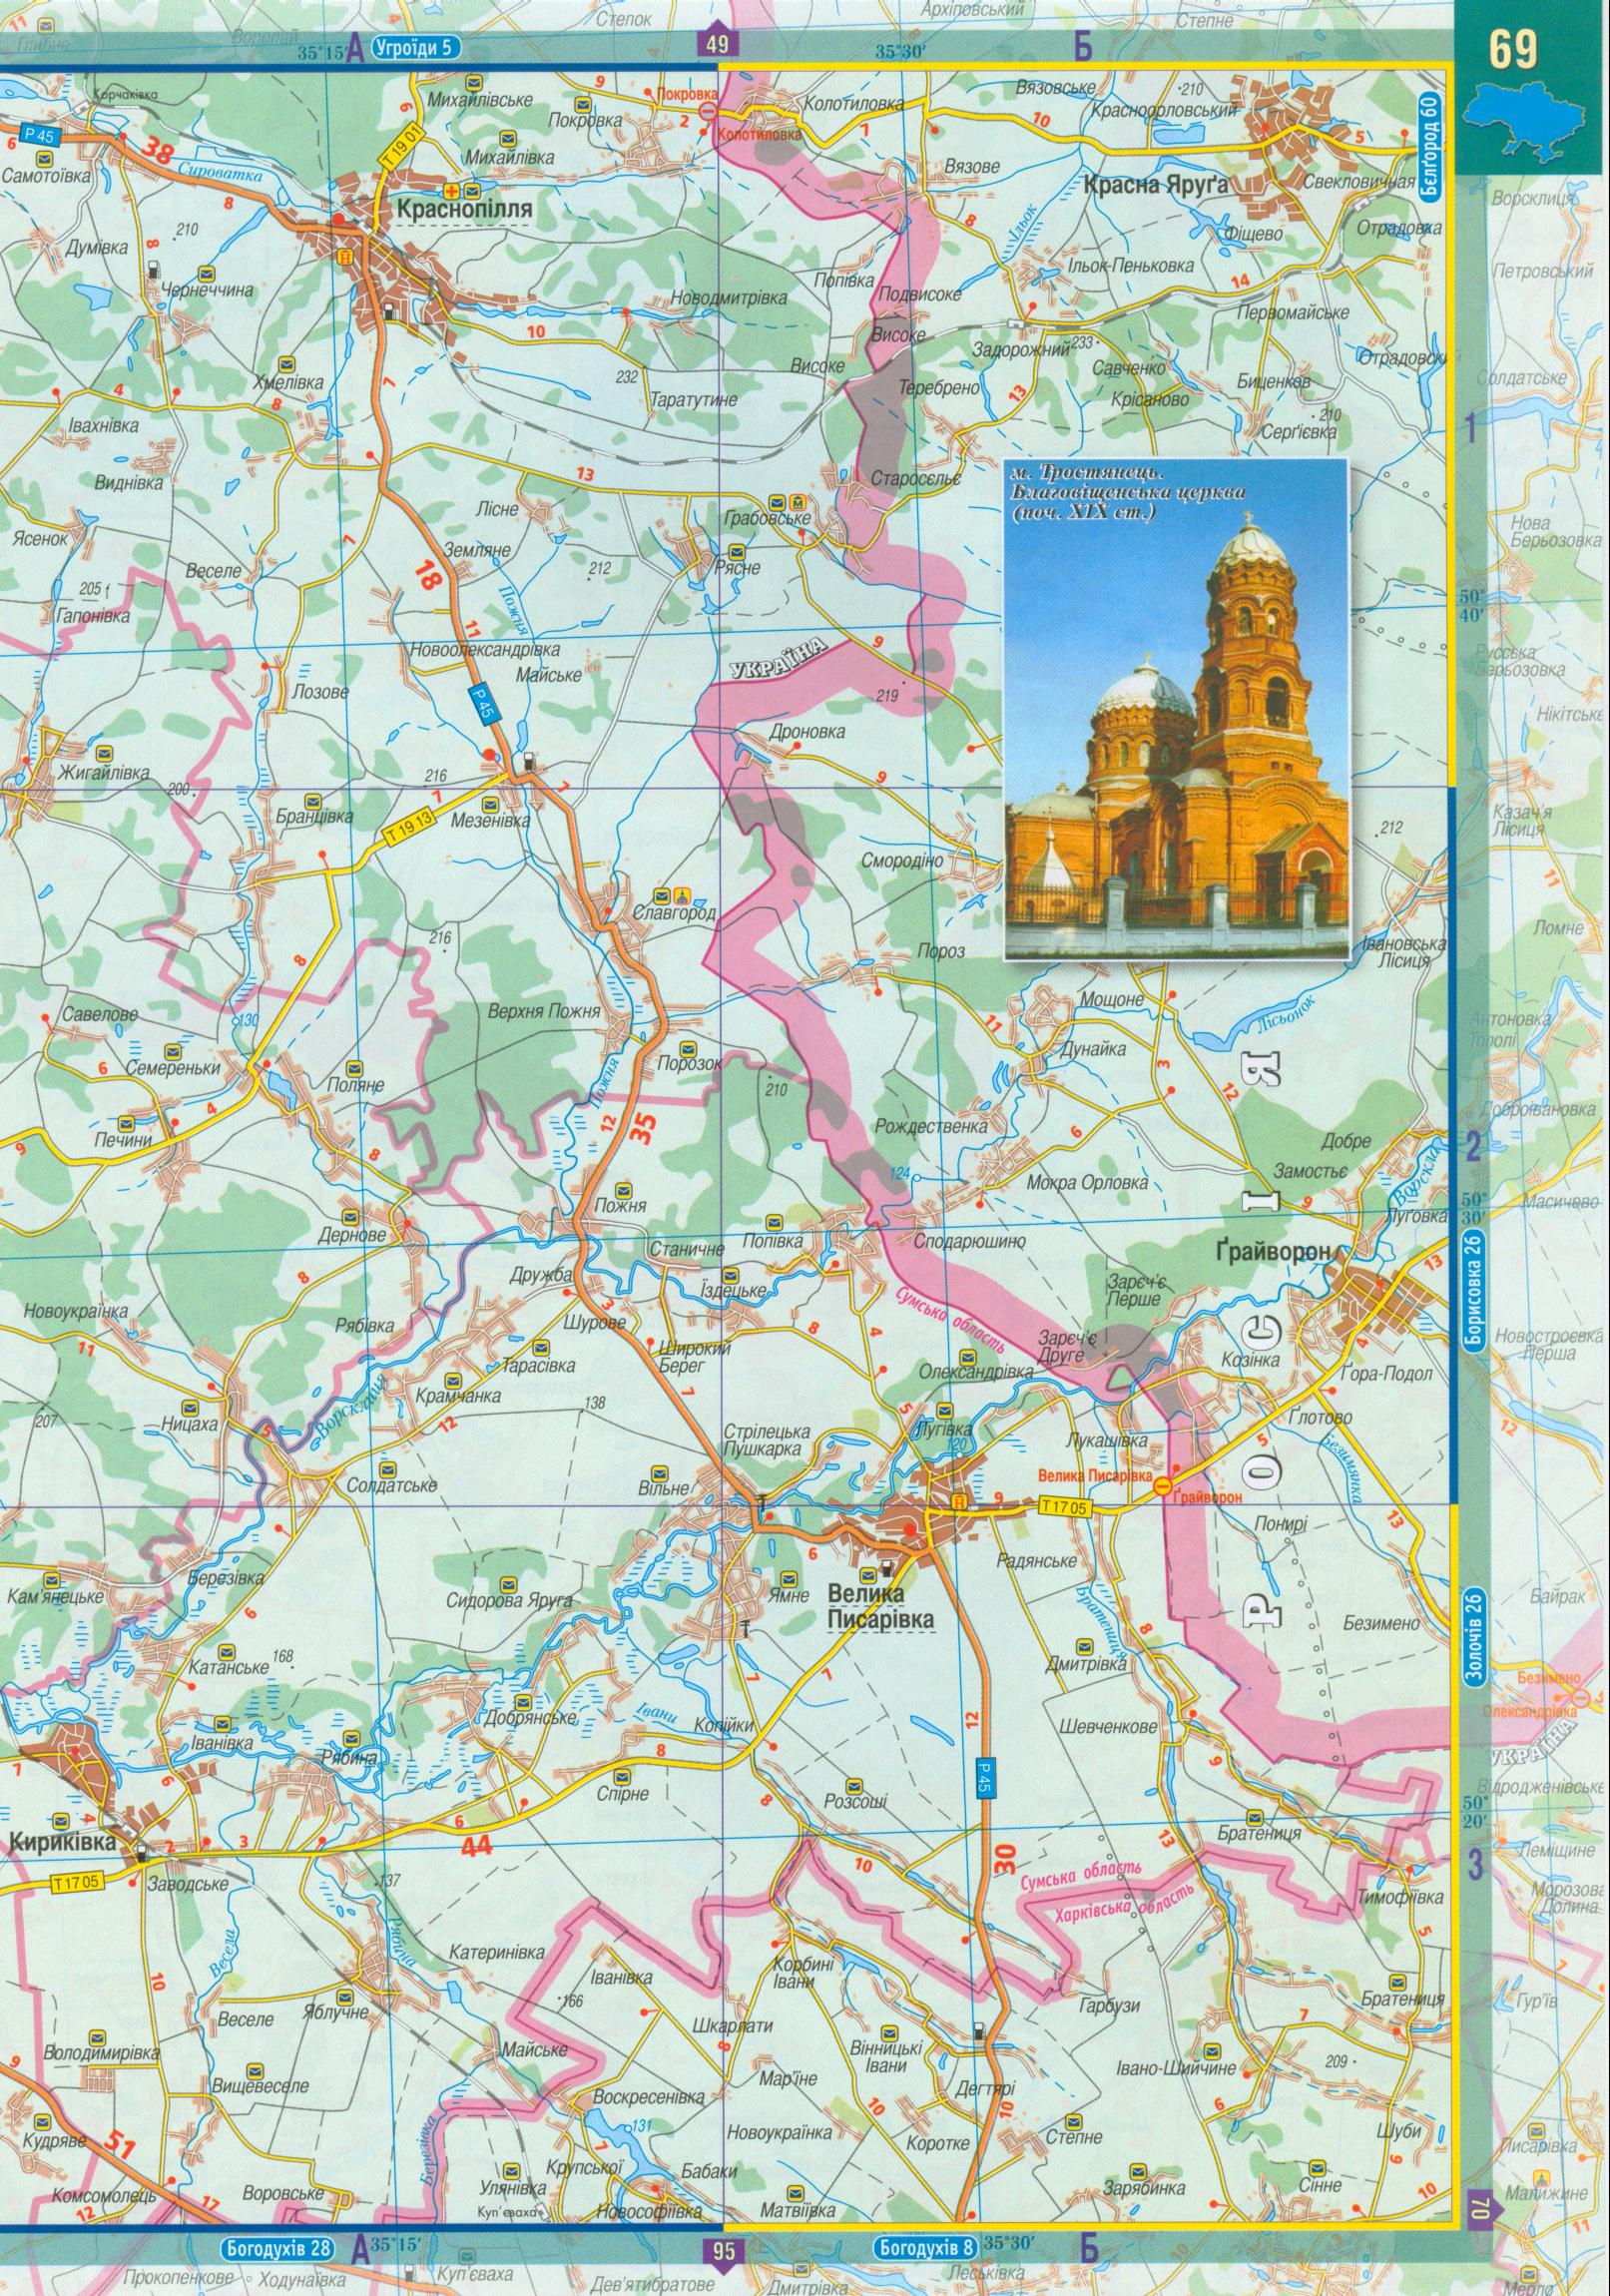 Карта Сумской области. Атлас автодорог Сумской области масштаба 1см:2,5км на украинском, B1 - 